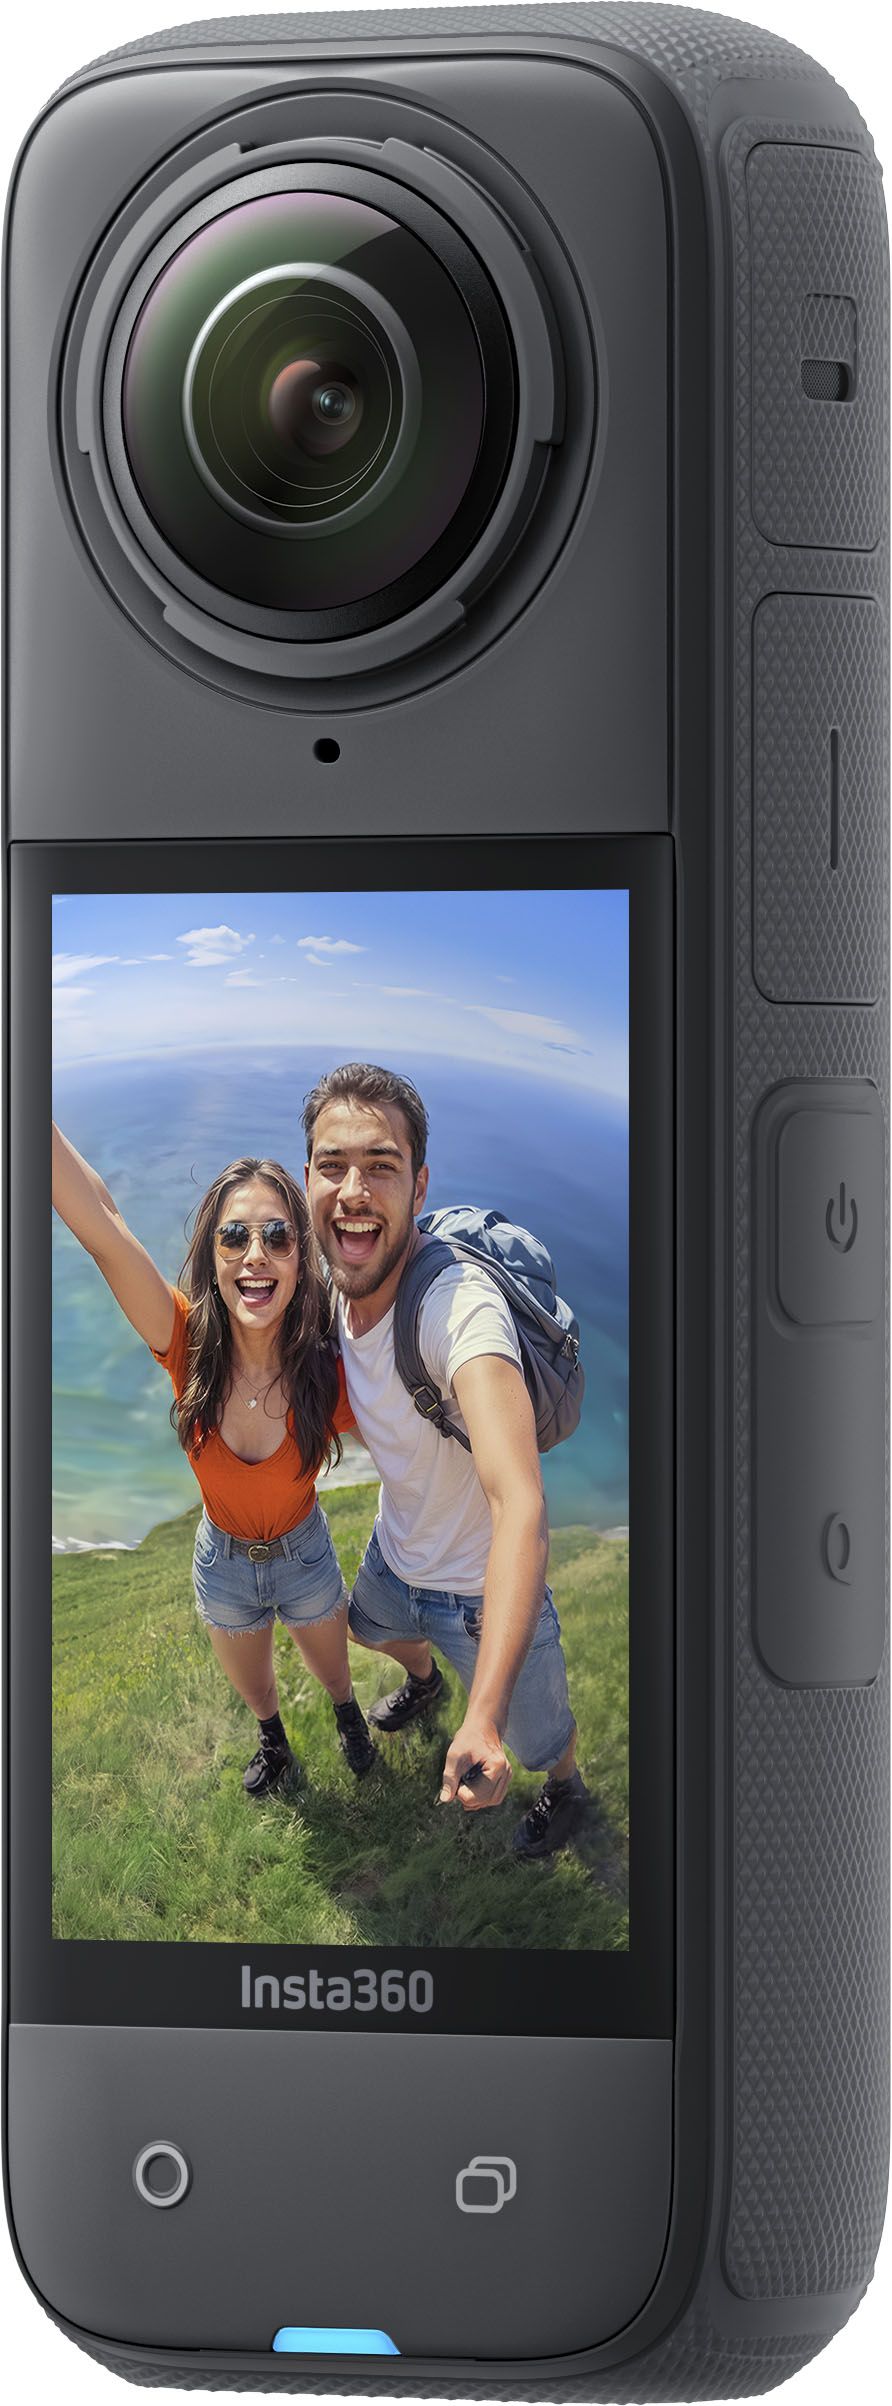 Insta360 X4 8K 360 Degree Action Camera Black CINSABMA - Best Buy | Best Buy U.S.